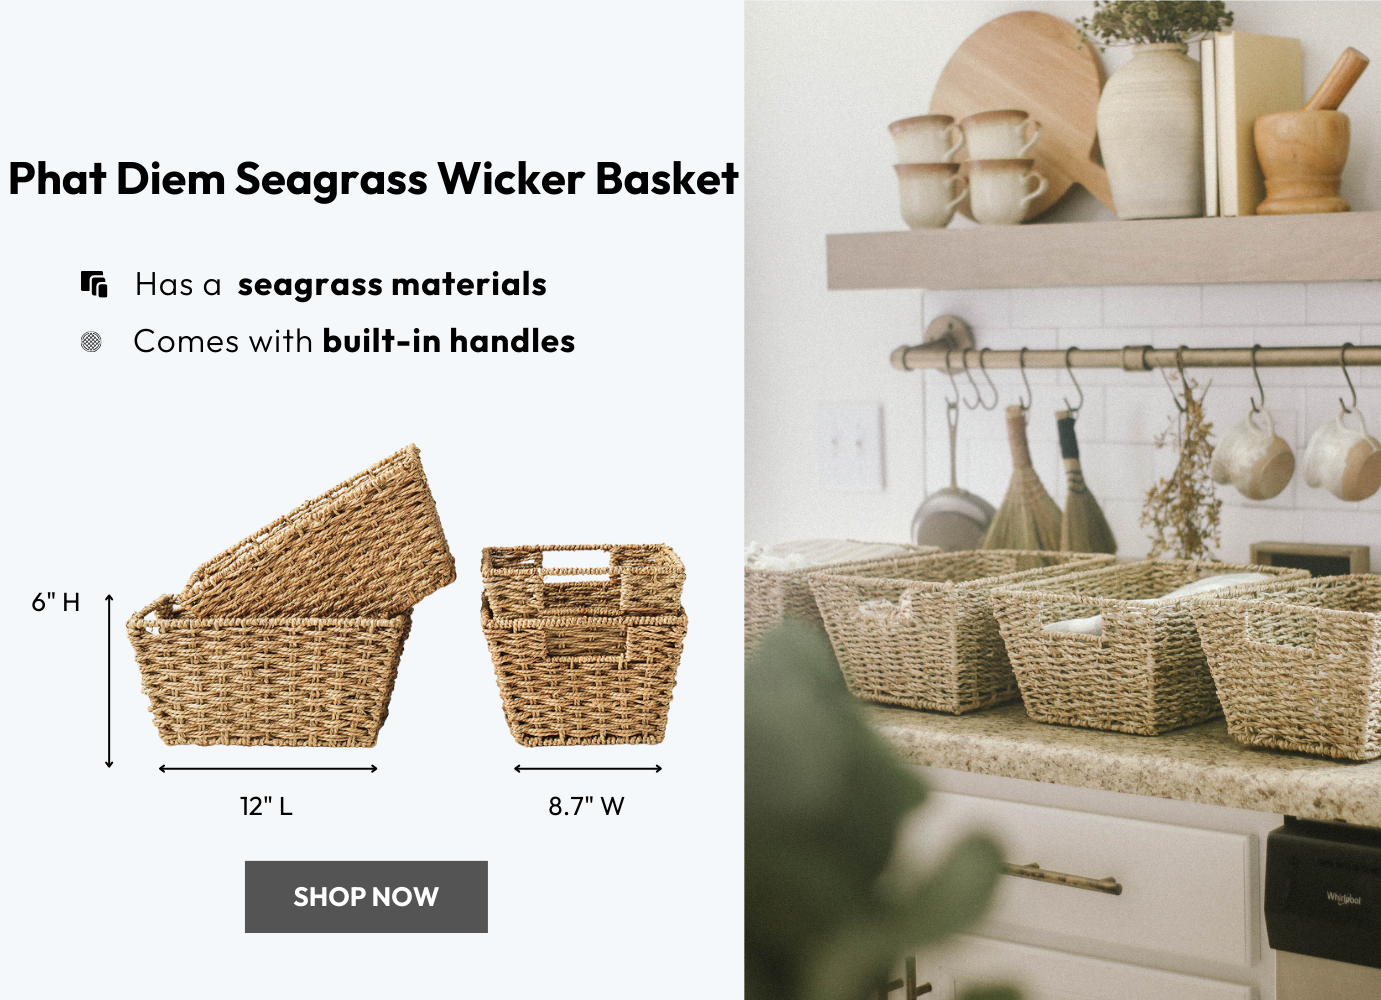 Phat Diem seagrass wicker basket